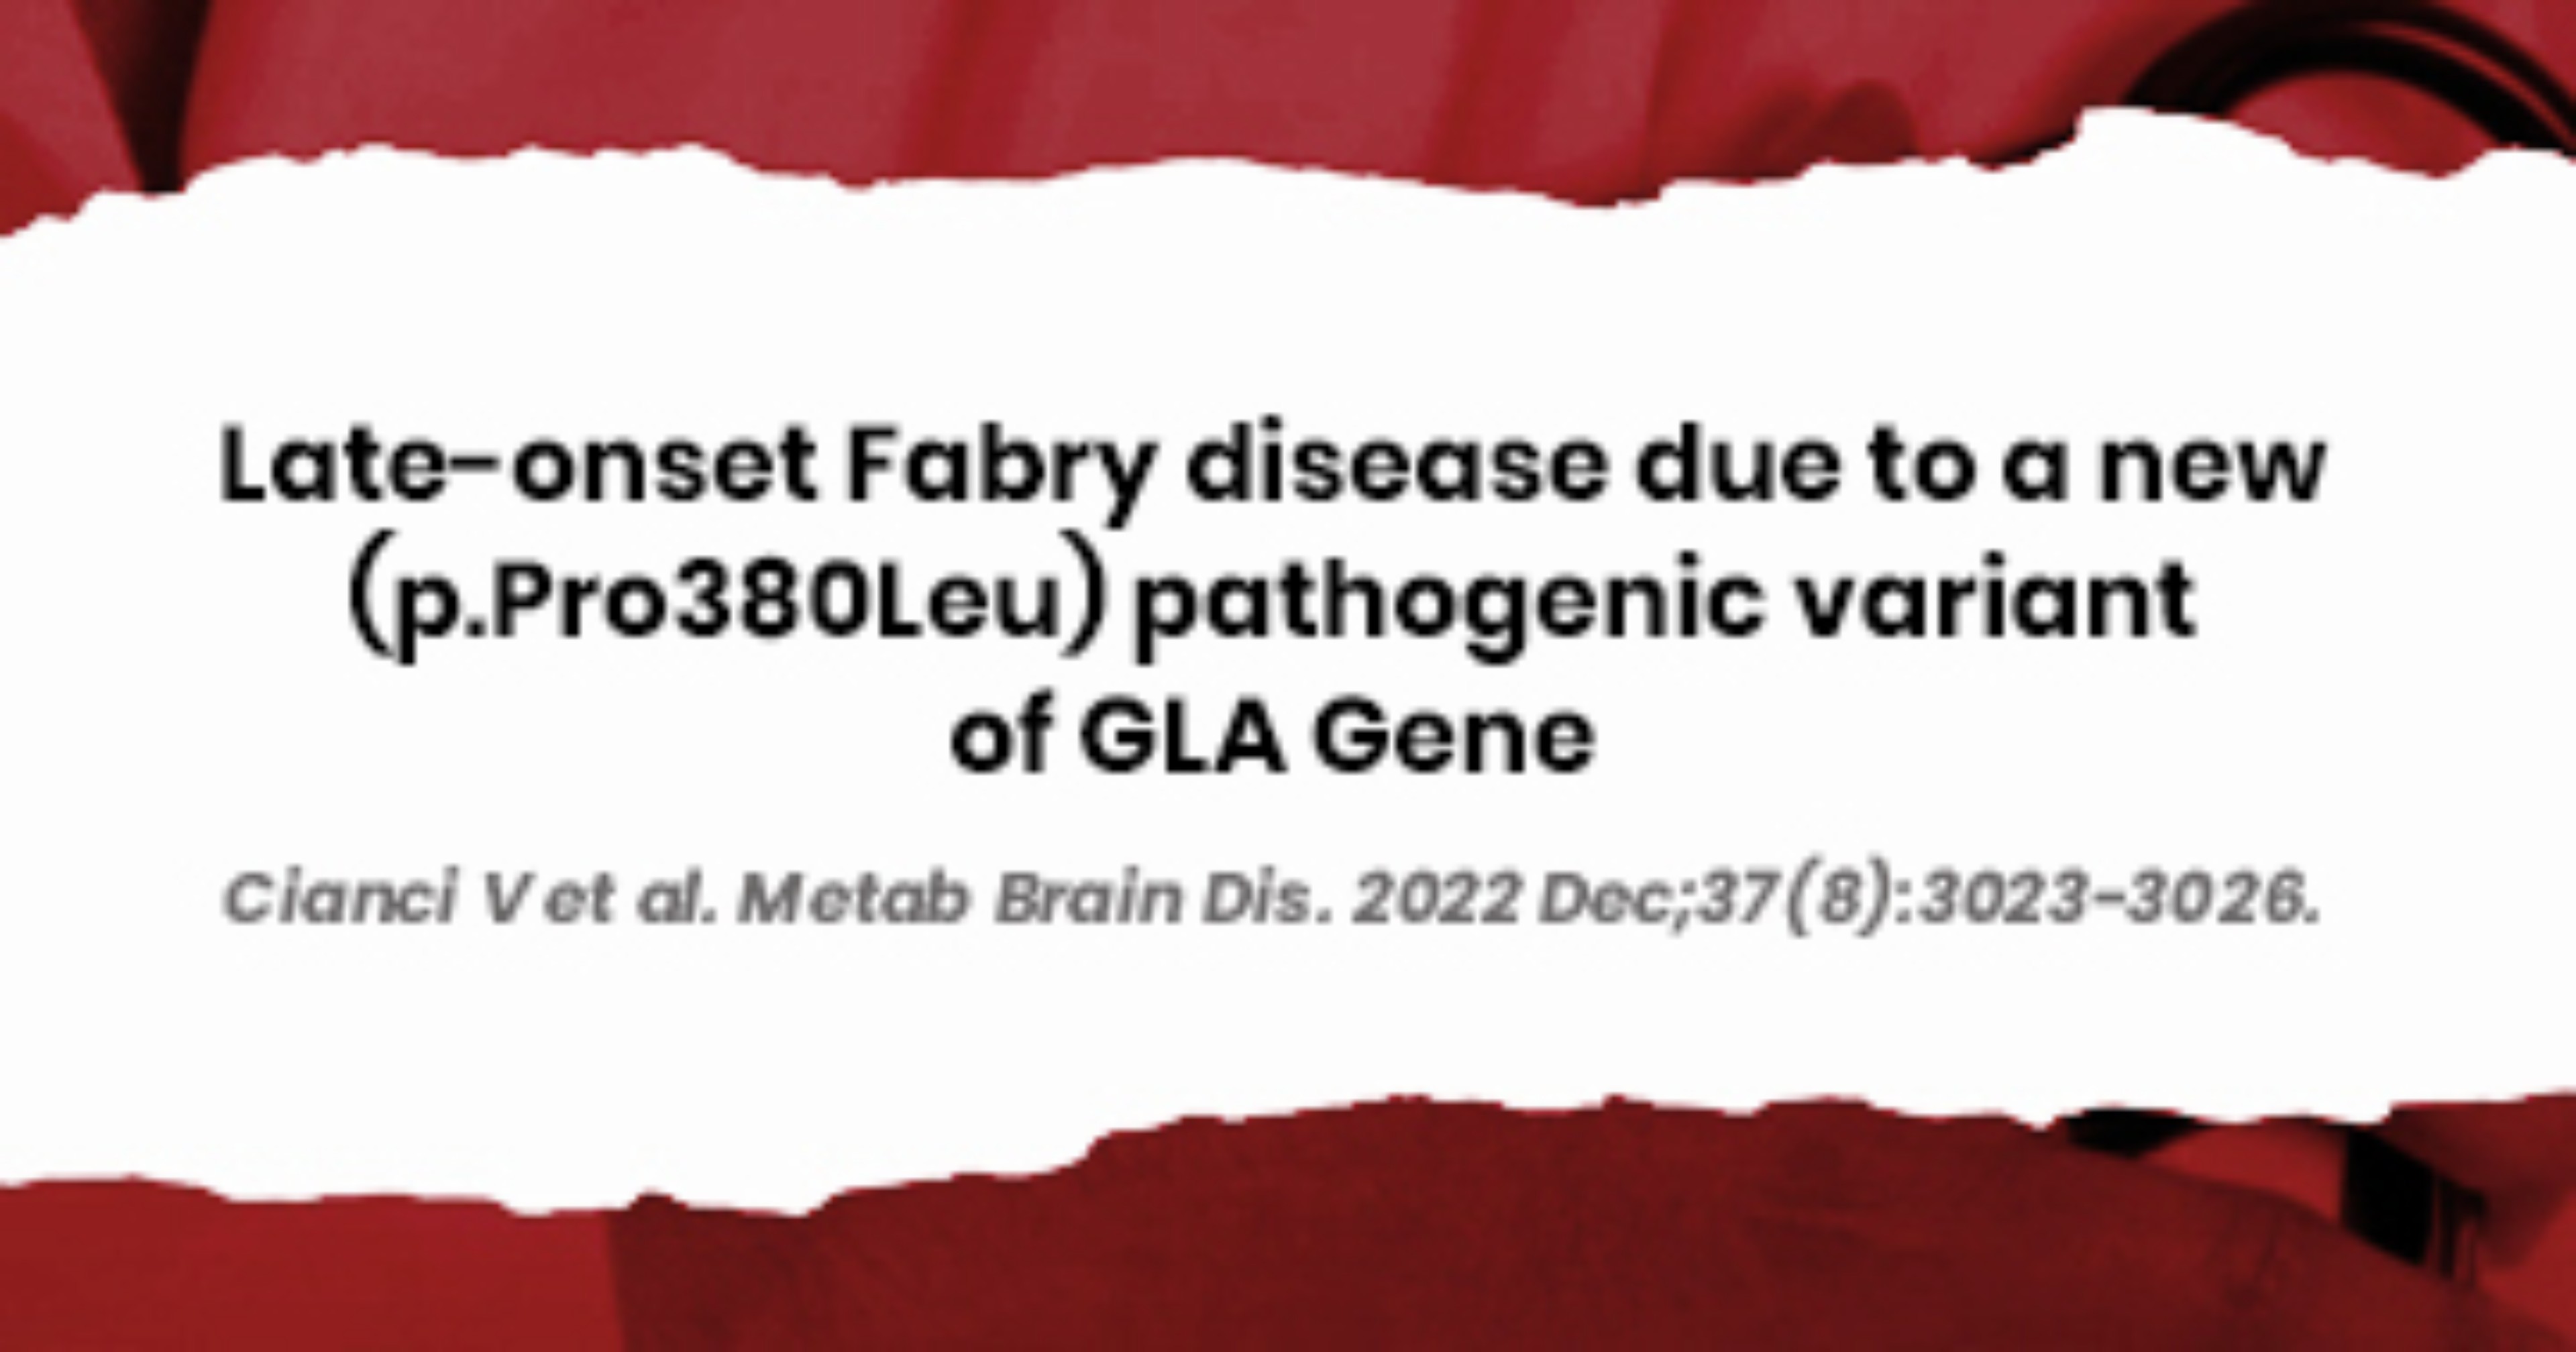 Nuova-variante-patogenetica-nella-malattia-di-Fabry-ad-esordio-tardivo